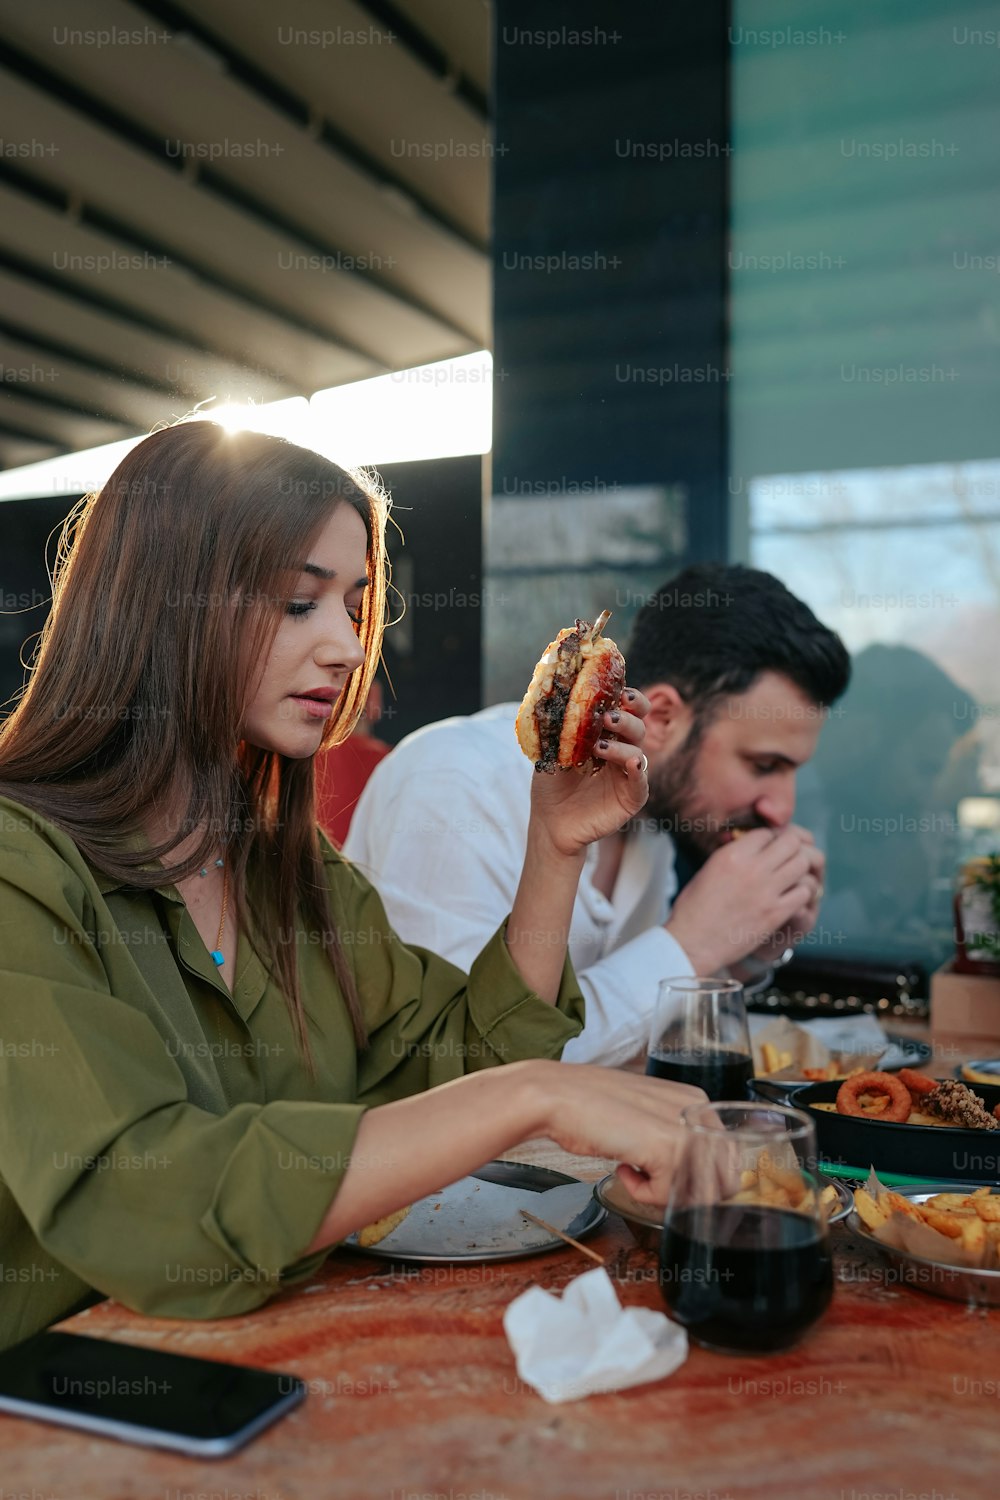 Un homme et une femme assis à une table en train de manger